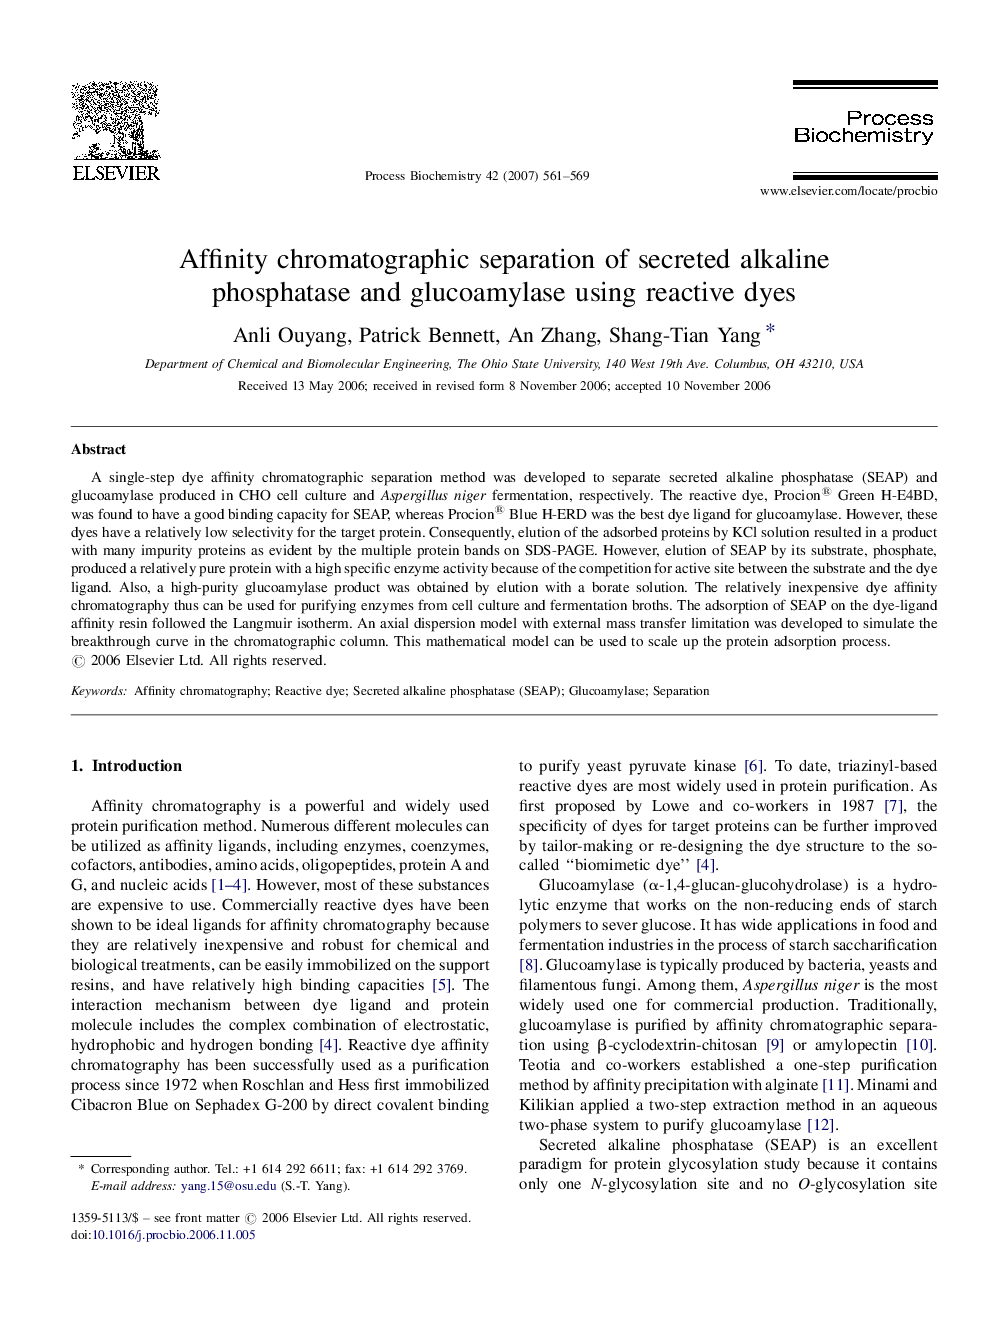 Affinity chromatographic separation of secreted alkaline phosphatase and glucoamylase using reactive dyes